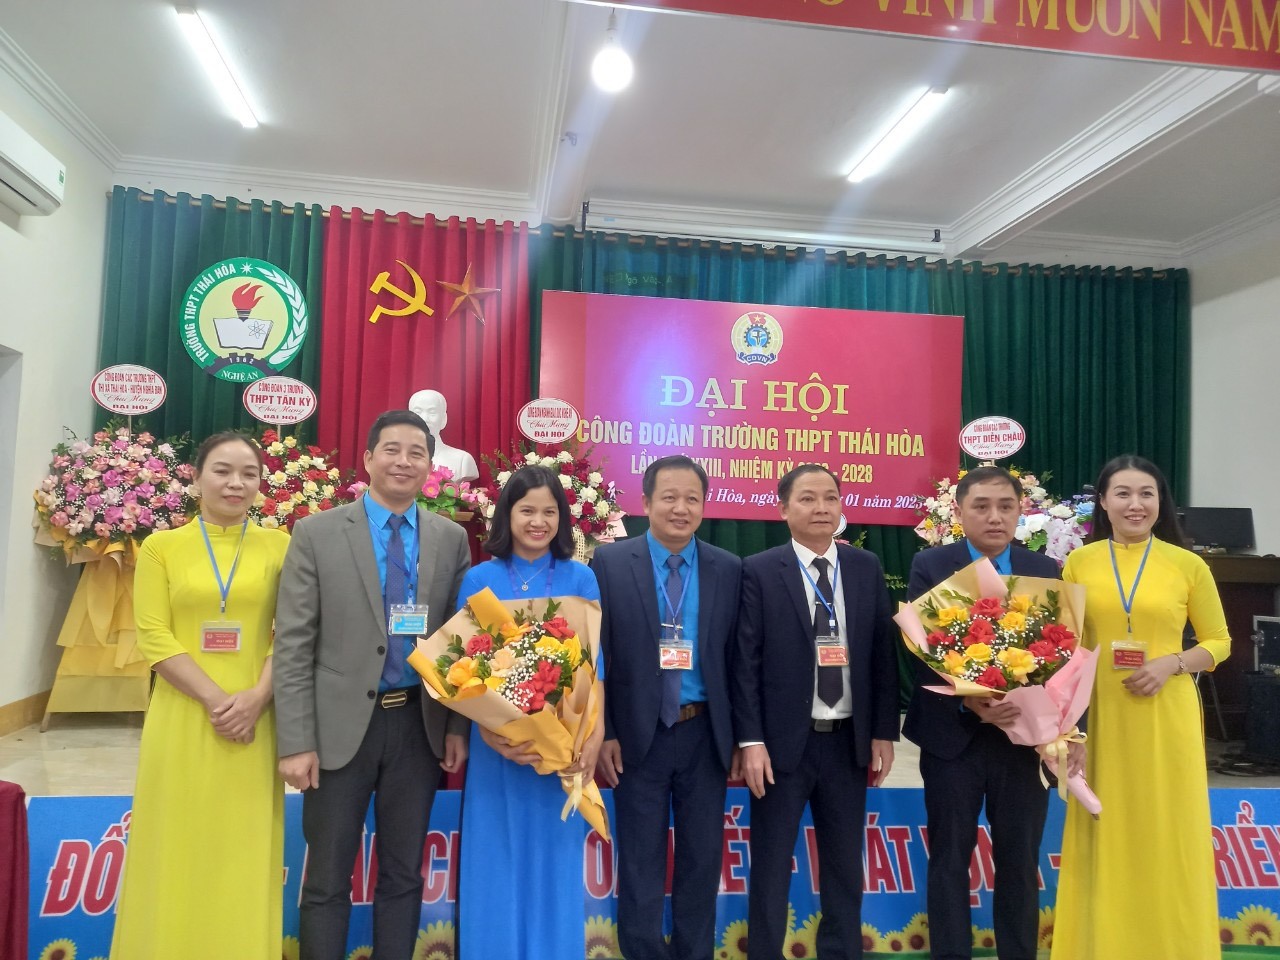 Đại hội đã bầu 5 đồng chí tham gia Ban Chấp hành Công đoàn Trường. Ảnh: Quỳnh Trang